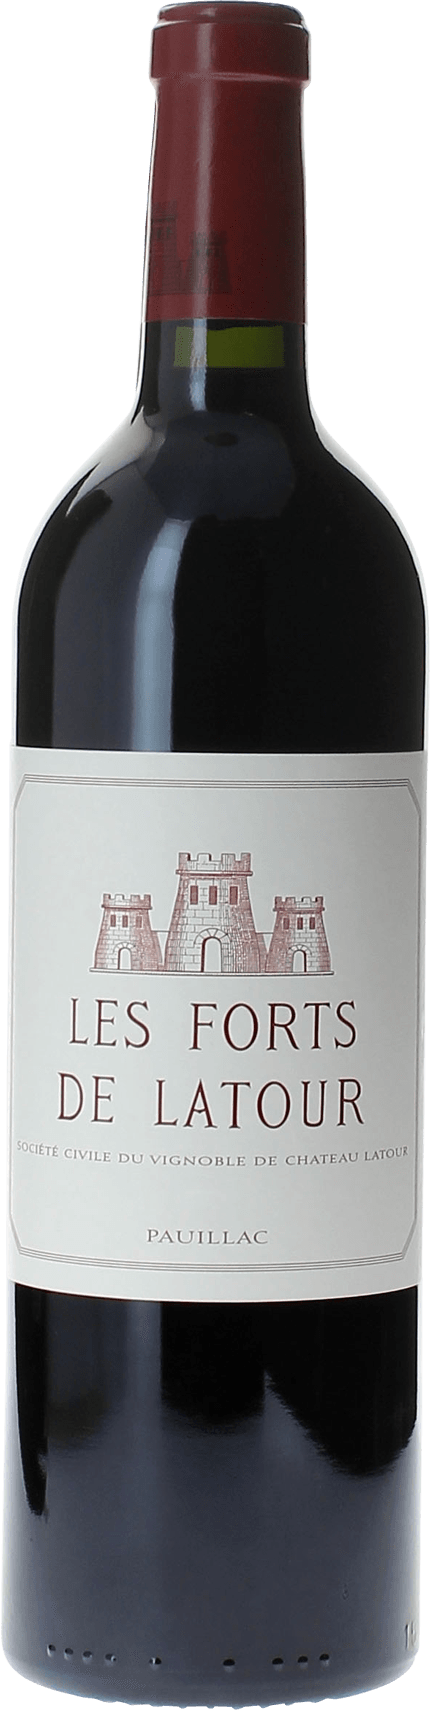 Les forts de latour 1993 2me vin de LATOUR Pauillac, Bordeaux rouge